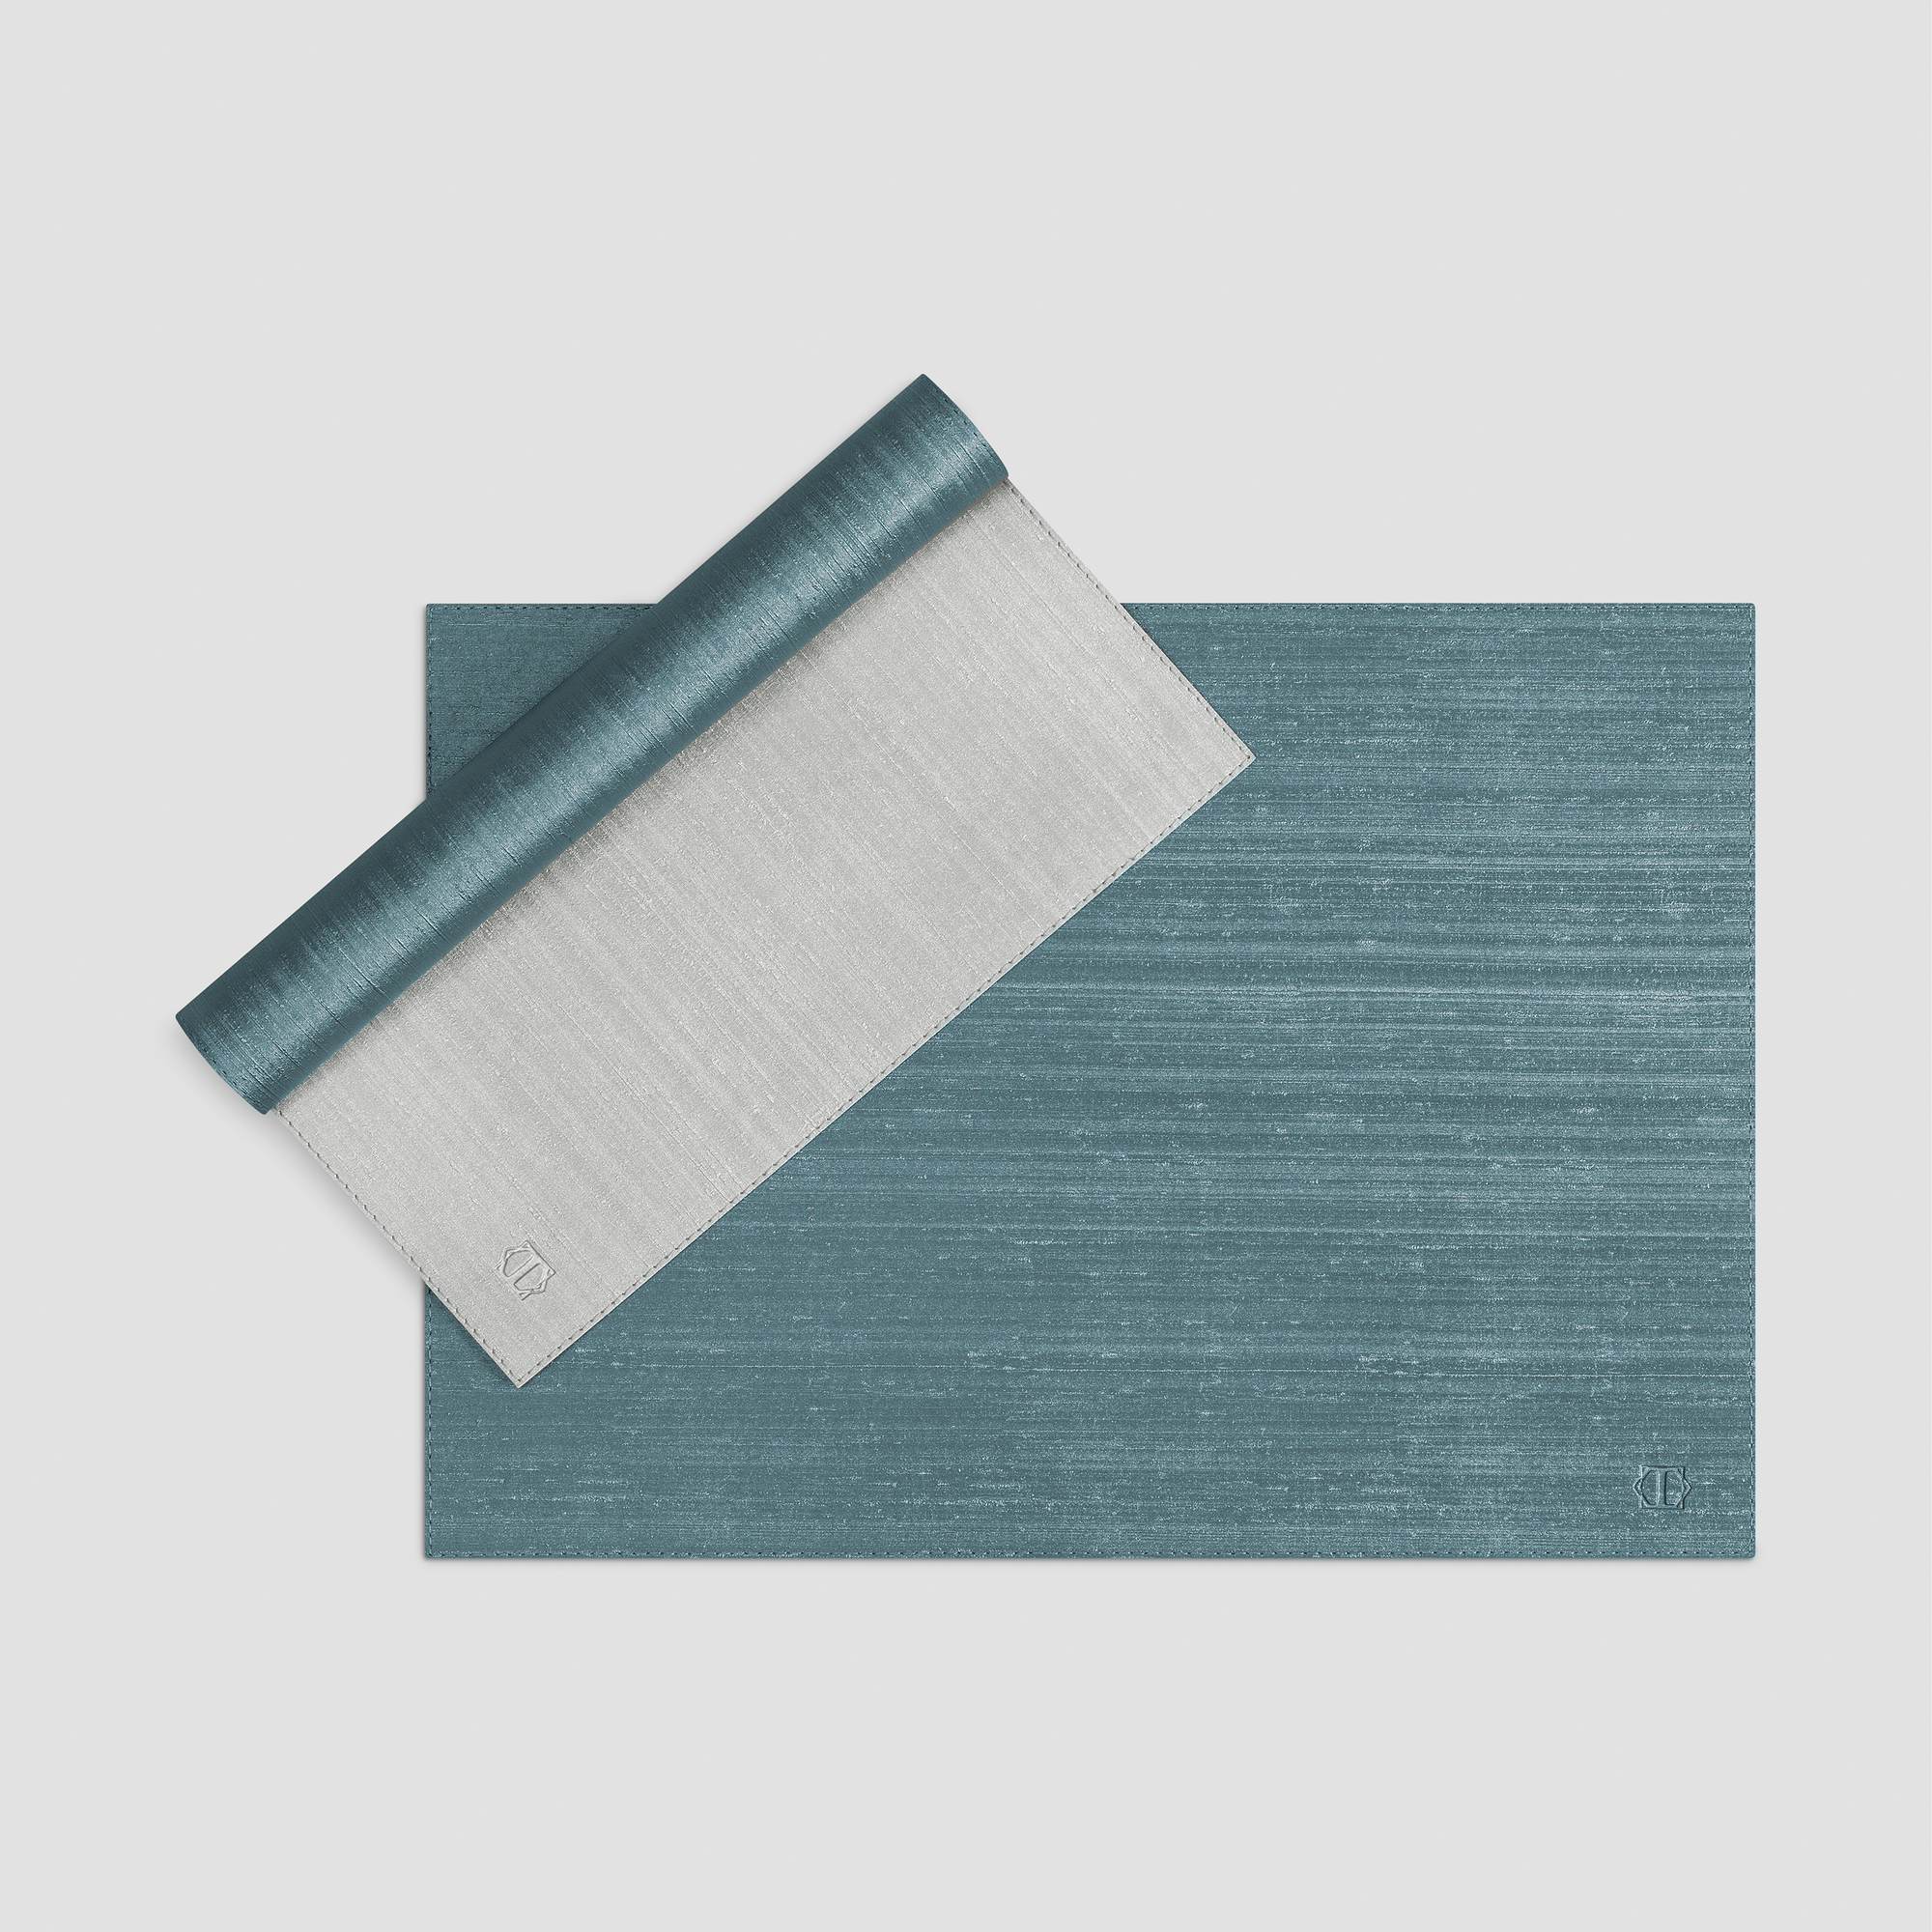 Подставка под горячее Togas Рафаэль бирюзово-серый 45x33 см, цвет бирюзовый